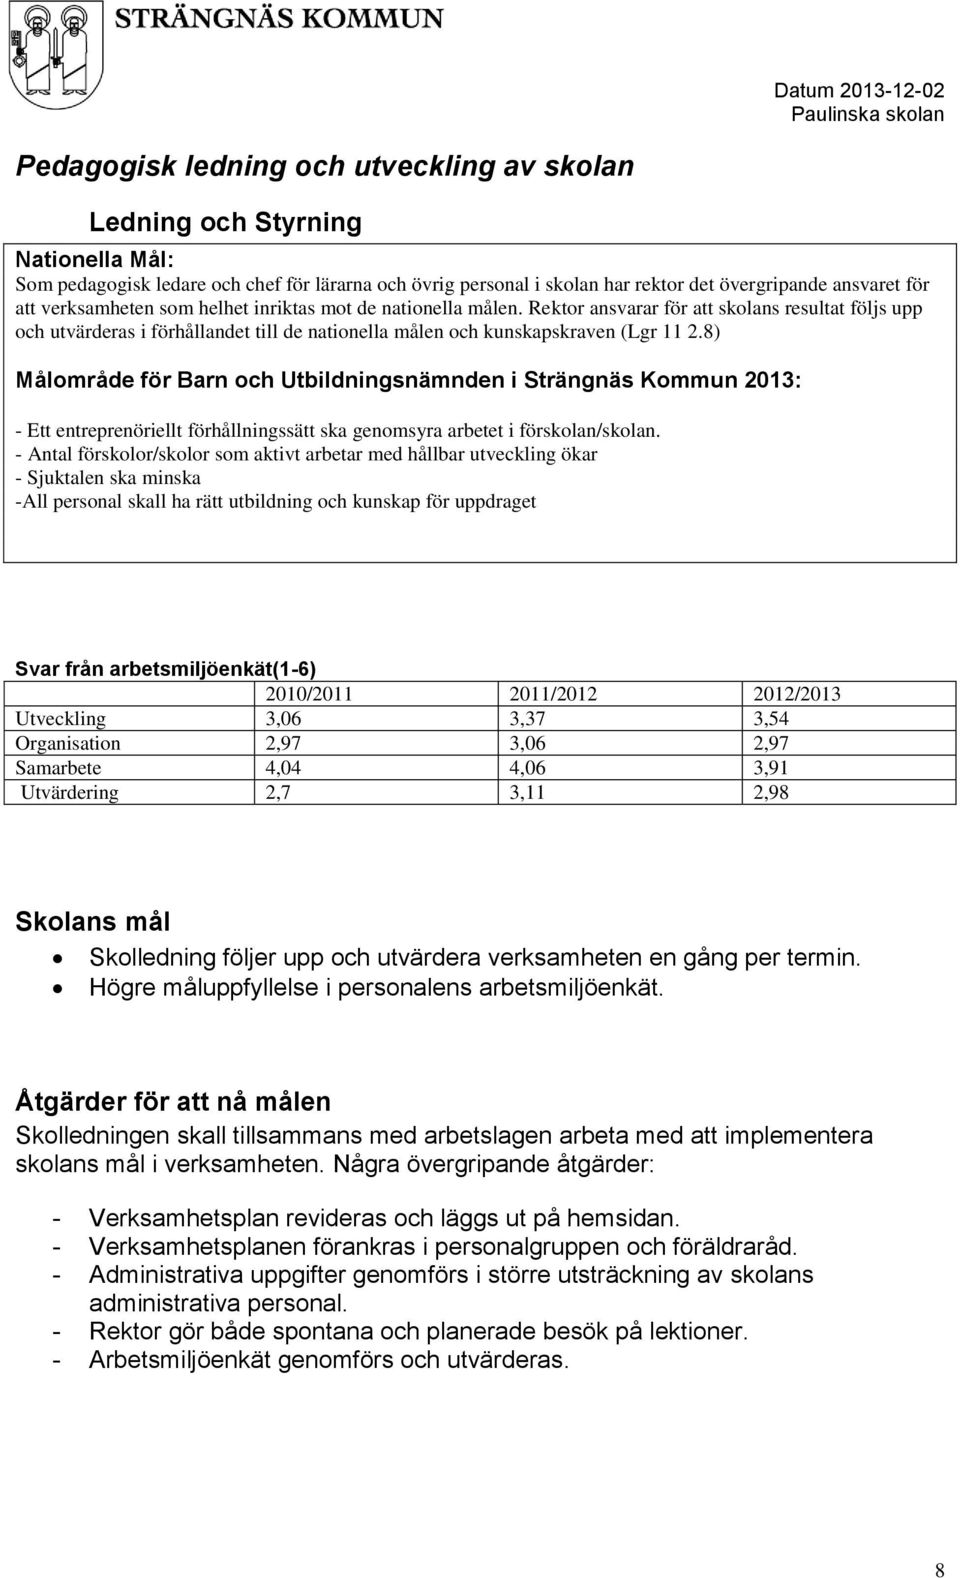 8) Målområde för Barn och Utbildningsnämnden i Strängnäs Kommun 2013: - Ett entreprenöriellt förhållningssätt ska genomsyra arbetet i förskolan/skolan.